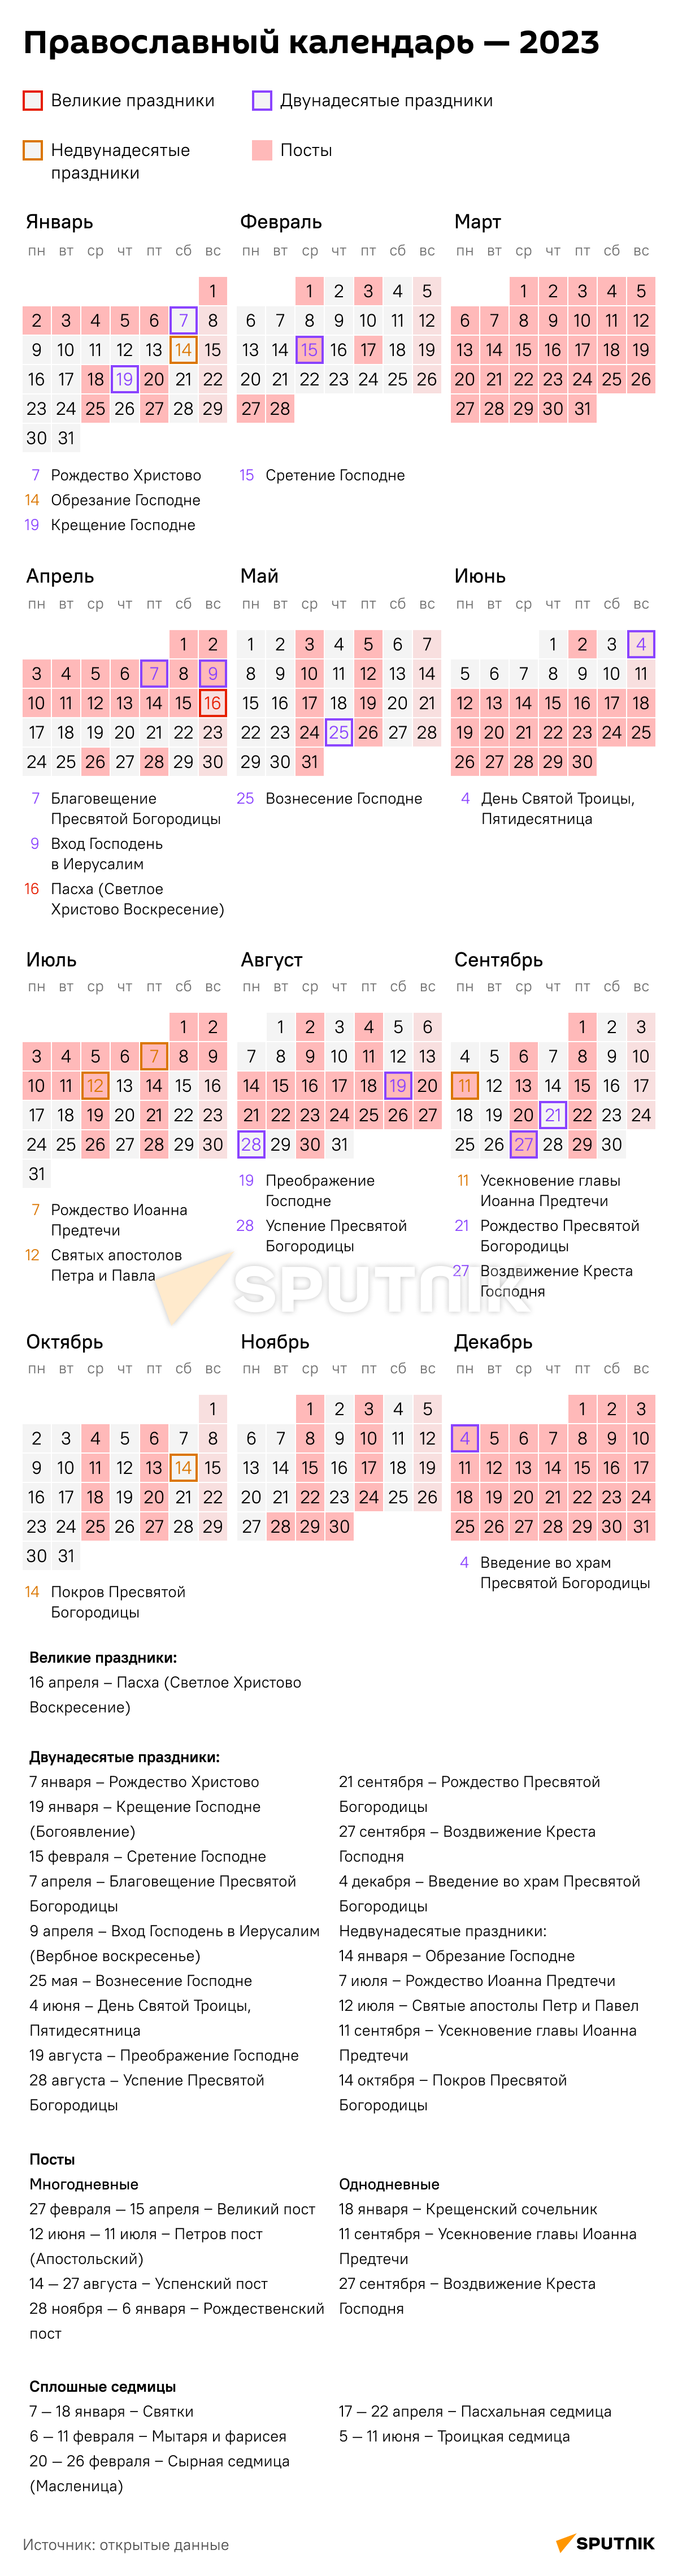 православный церковный календарь на 2023 год григорианский